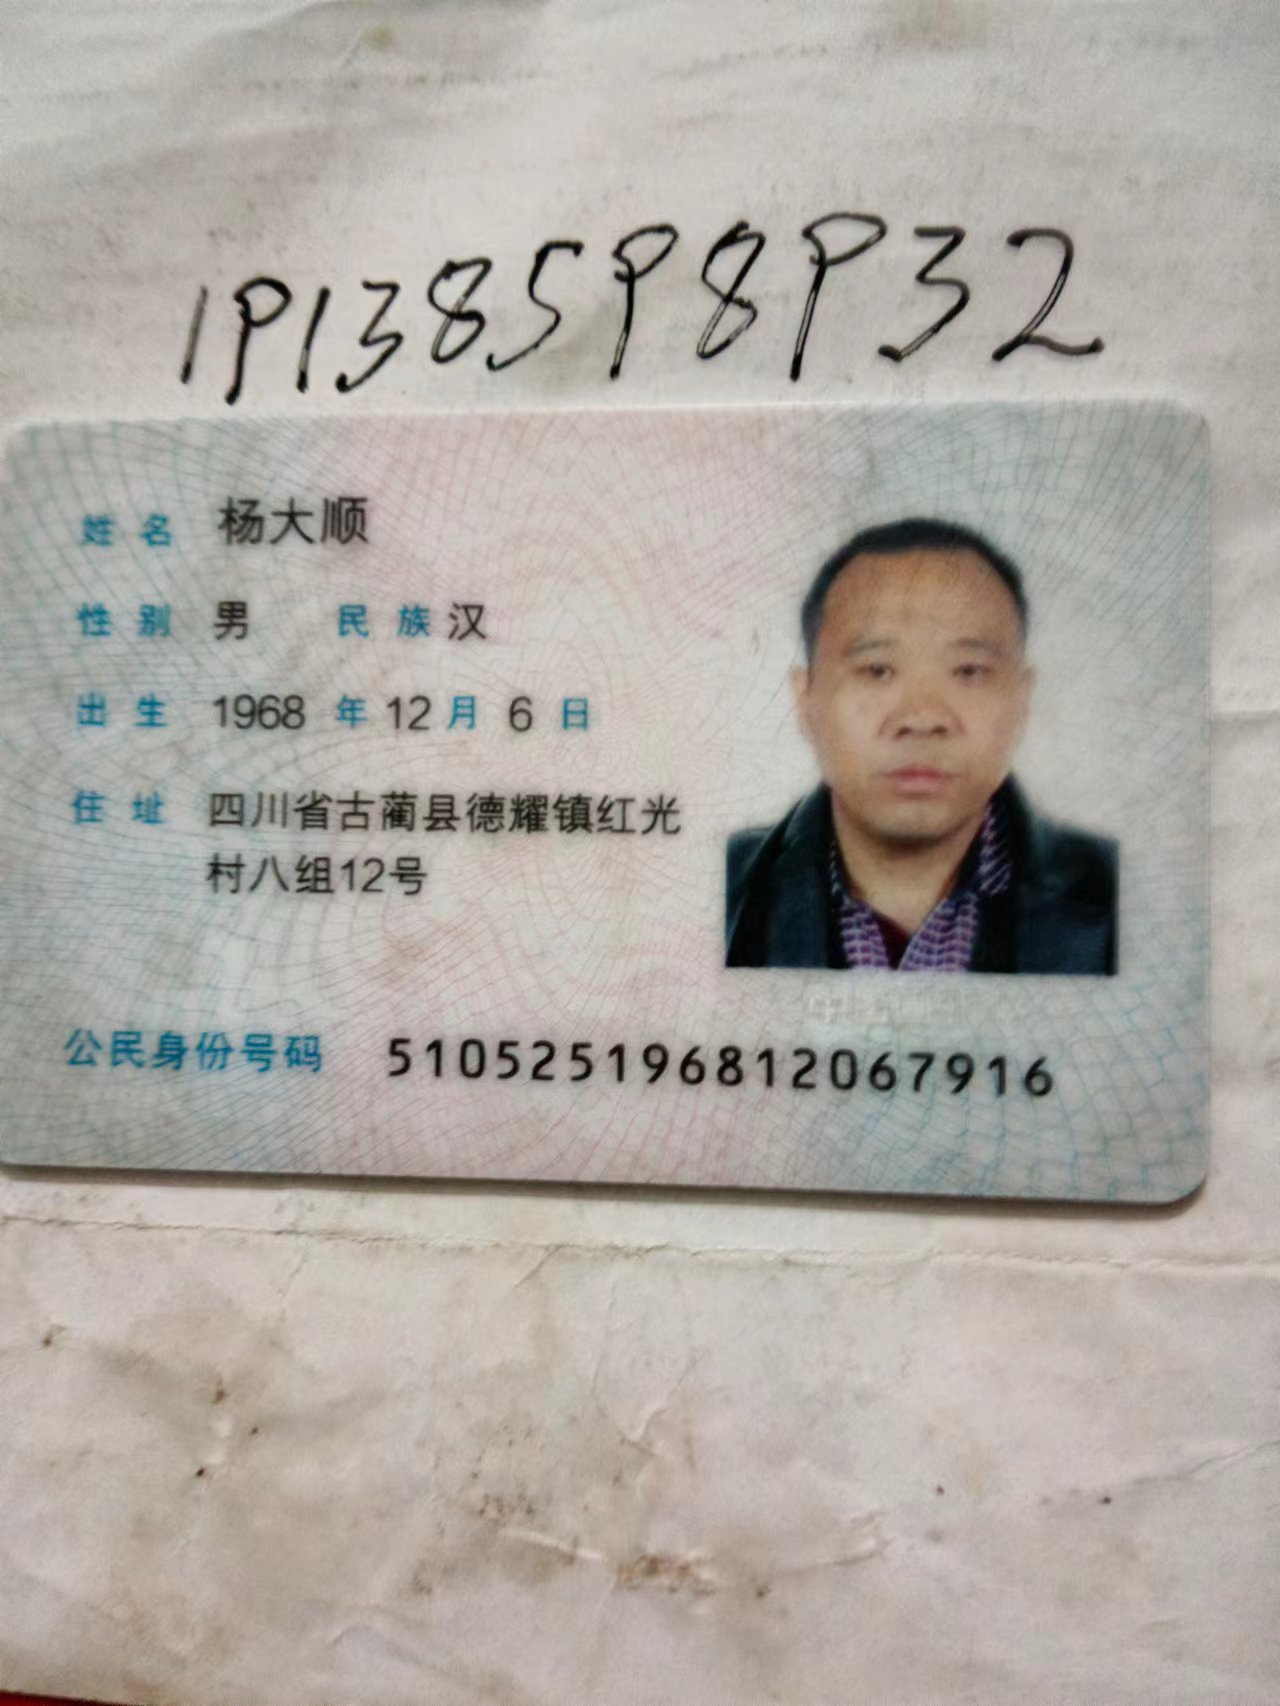 杨大顺于2023年3月24日从古蔺骑车到民乐路段拉落一个口贷里面有我所有的证件望检到还给我谢谢